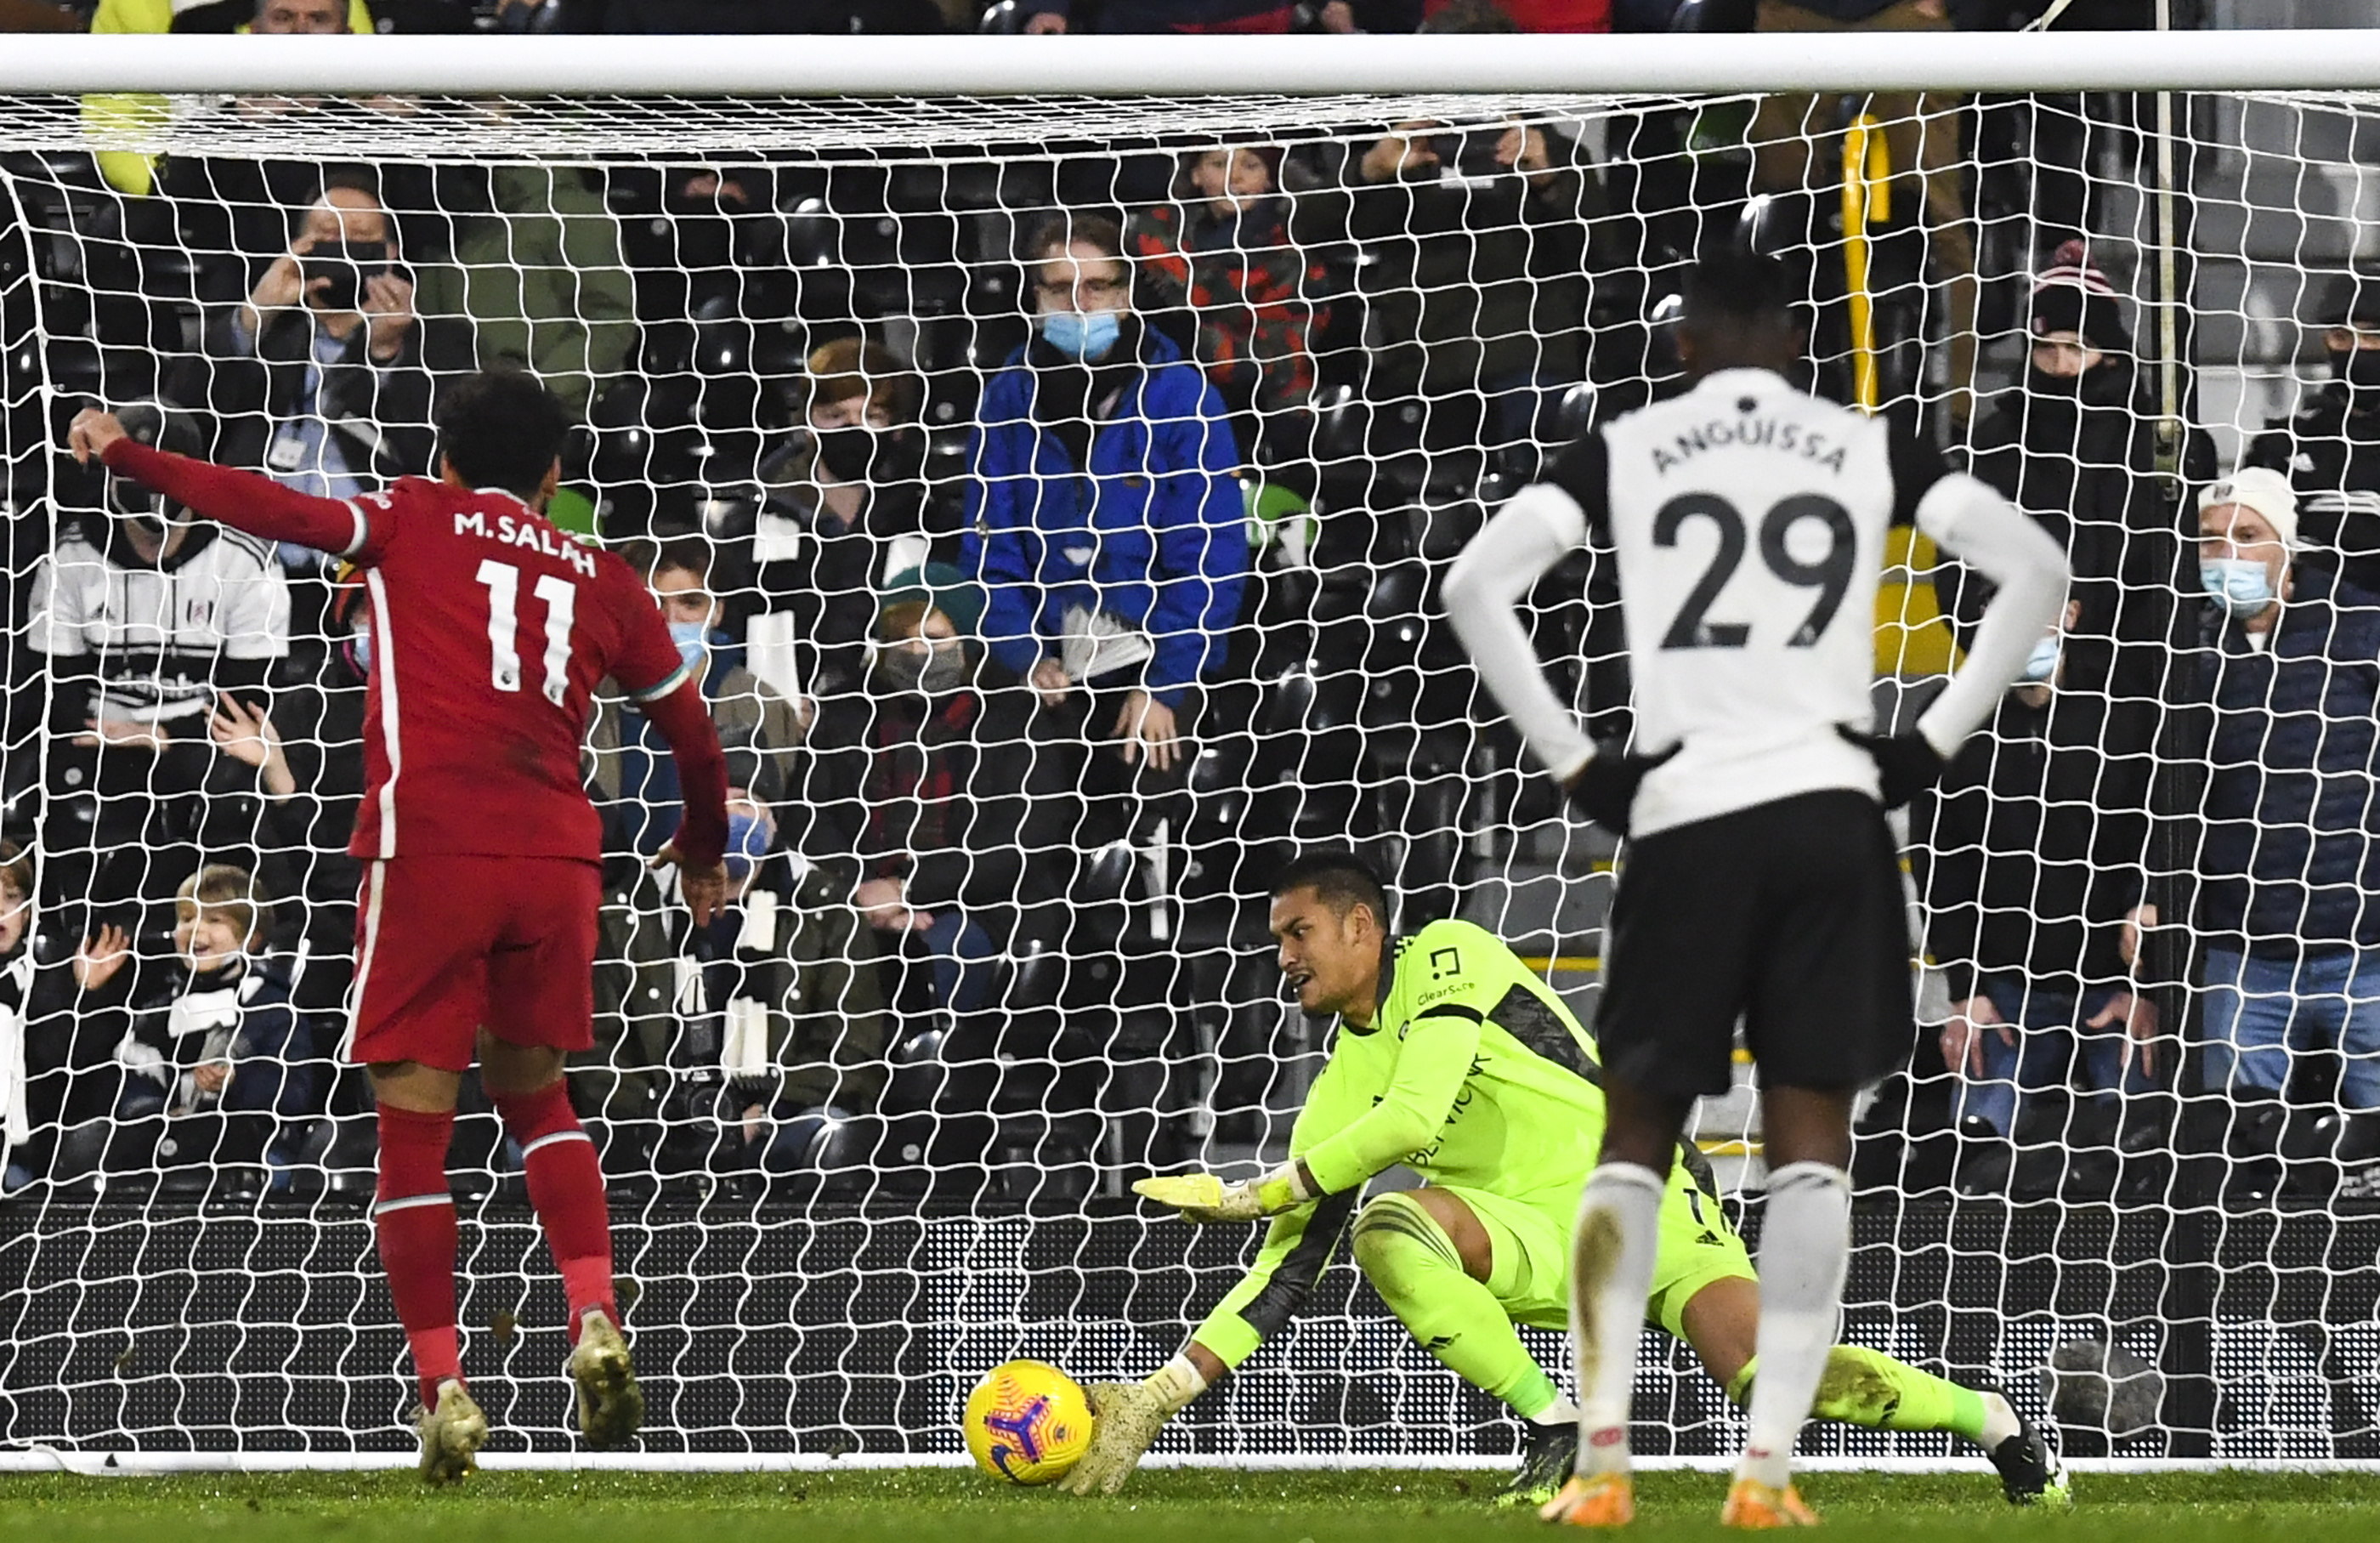 El Liverpool empató ante el Fullham y perdió la oportunidad de tomar el liderato de la Premier League, luego que el Tottenham, actual líder, también empatara. (Foto Prensa Libre: EFE)